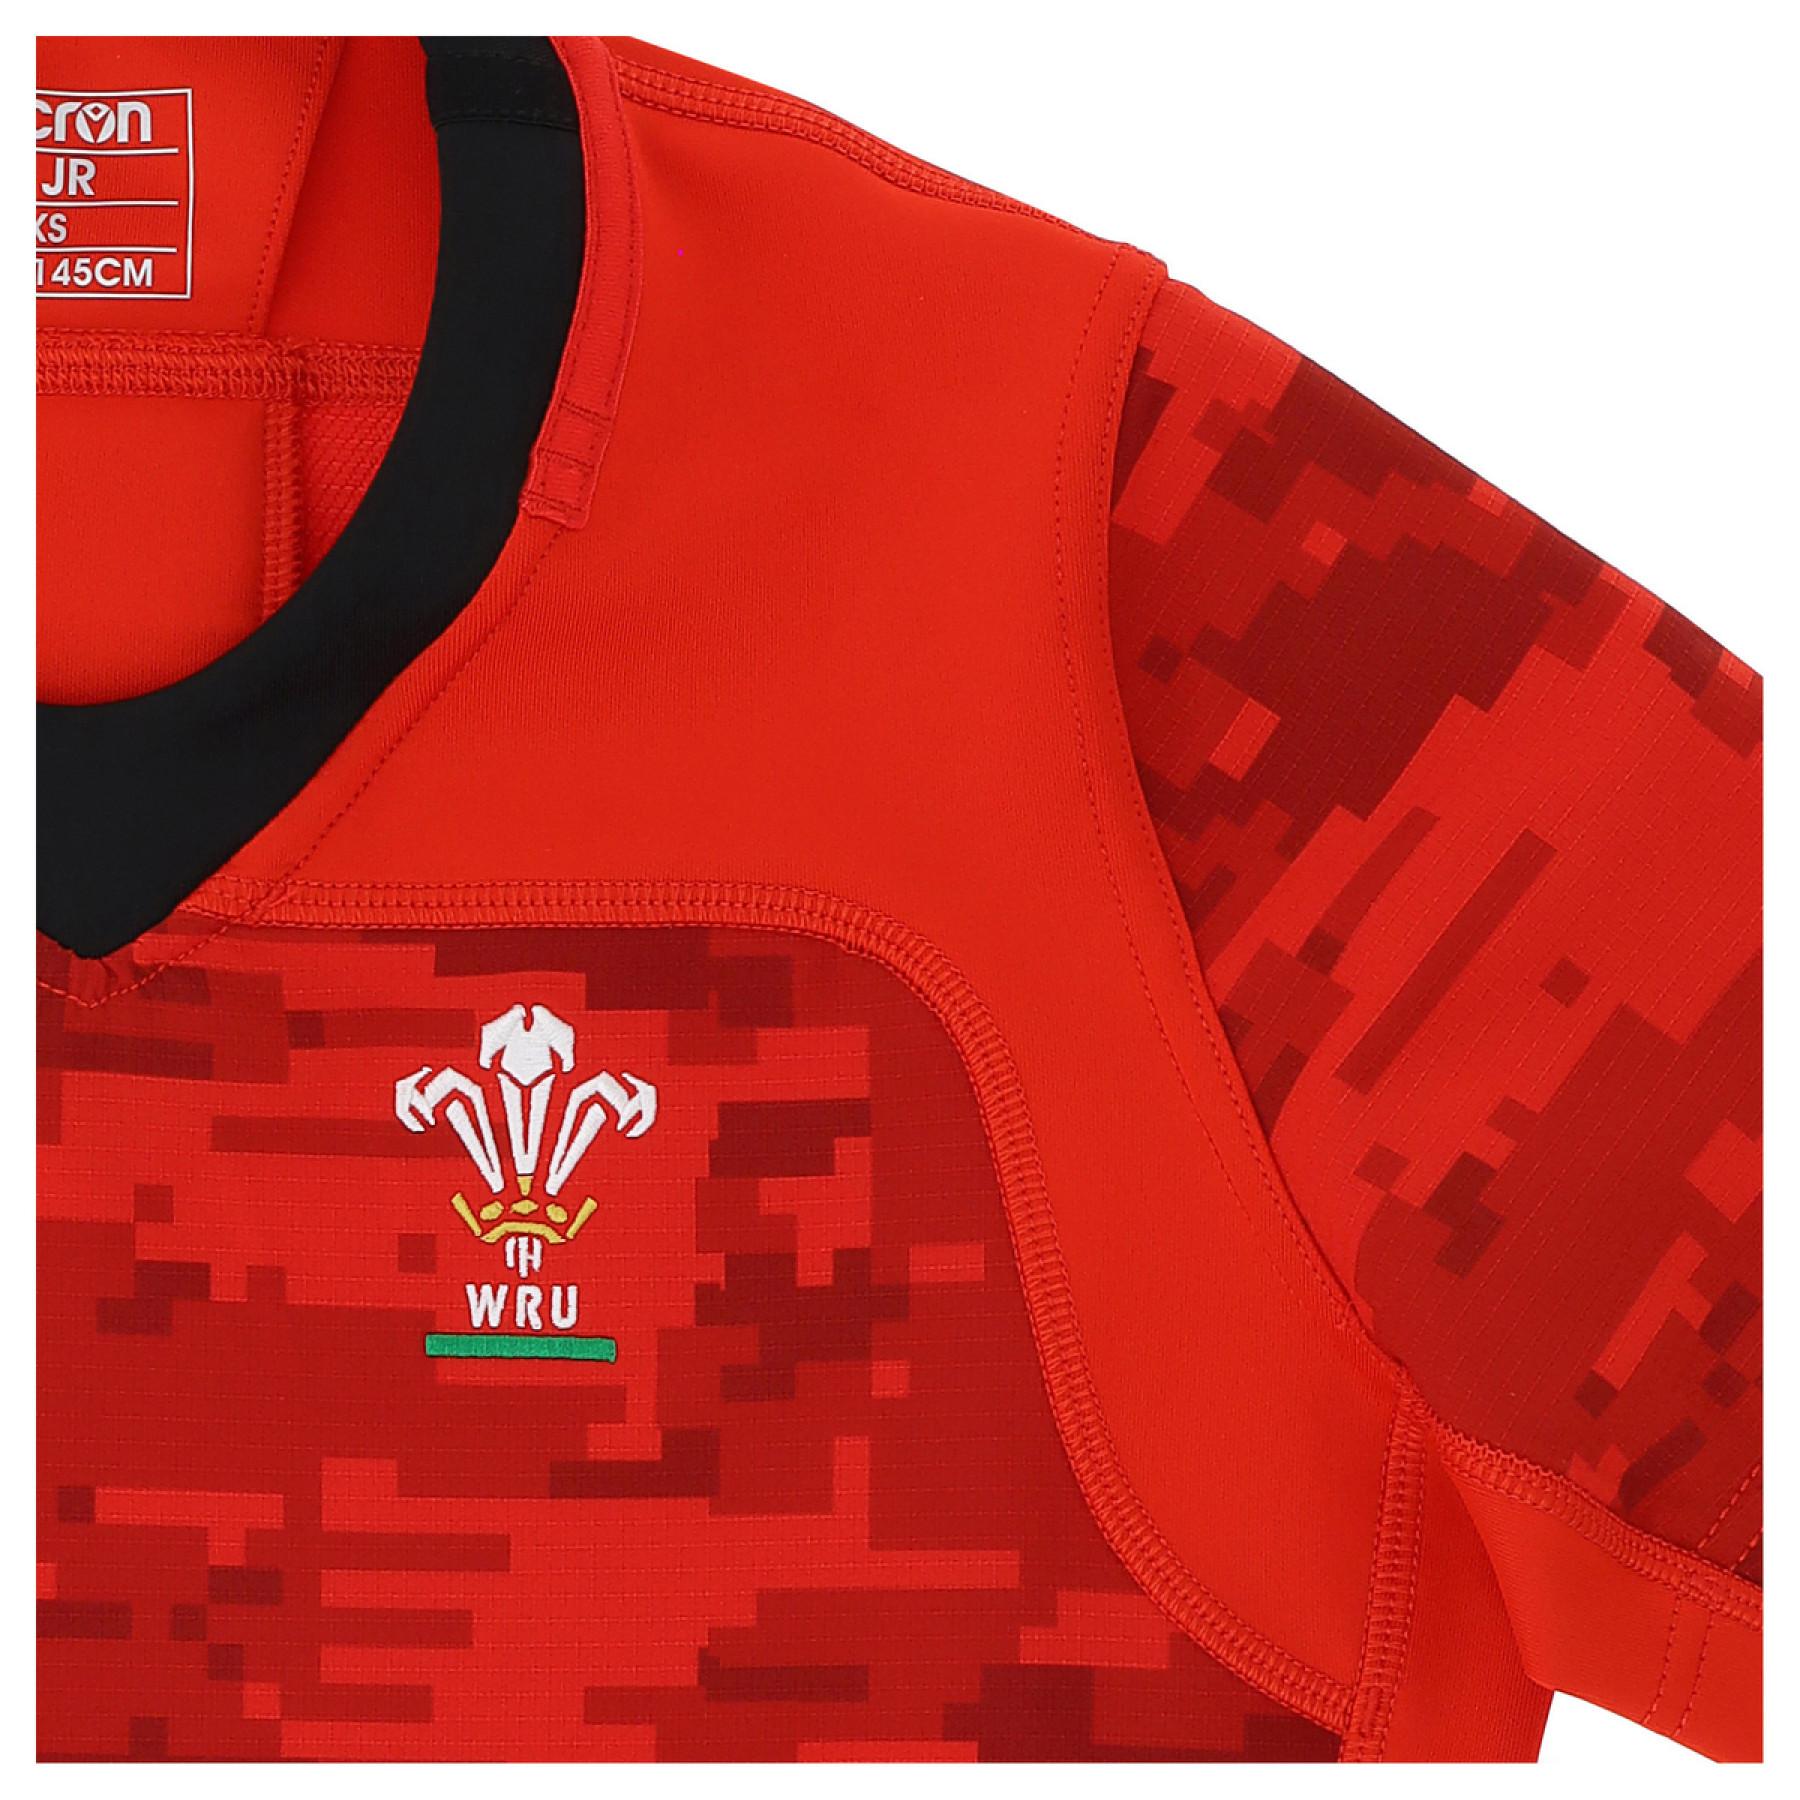 Rugby-T-Shirt für Kinder Pays de Galles union 2020/21